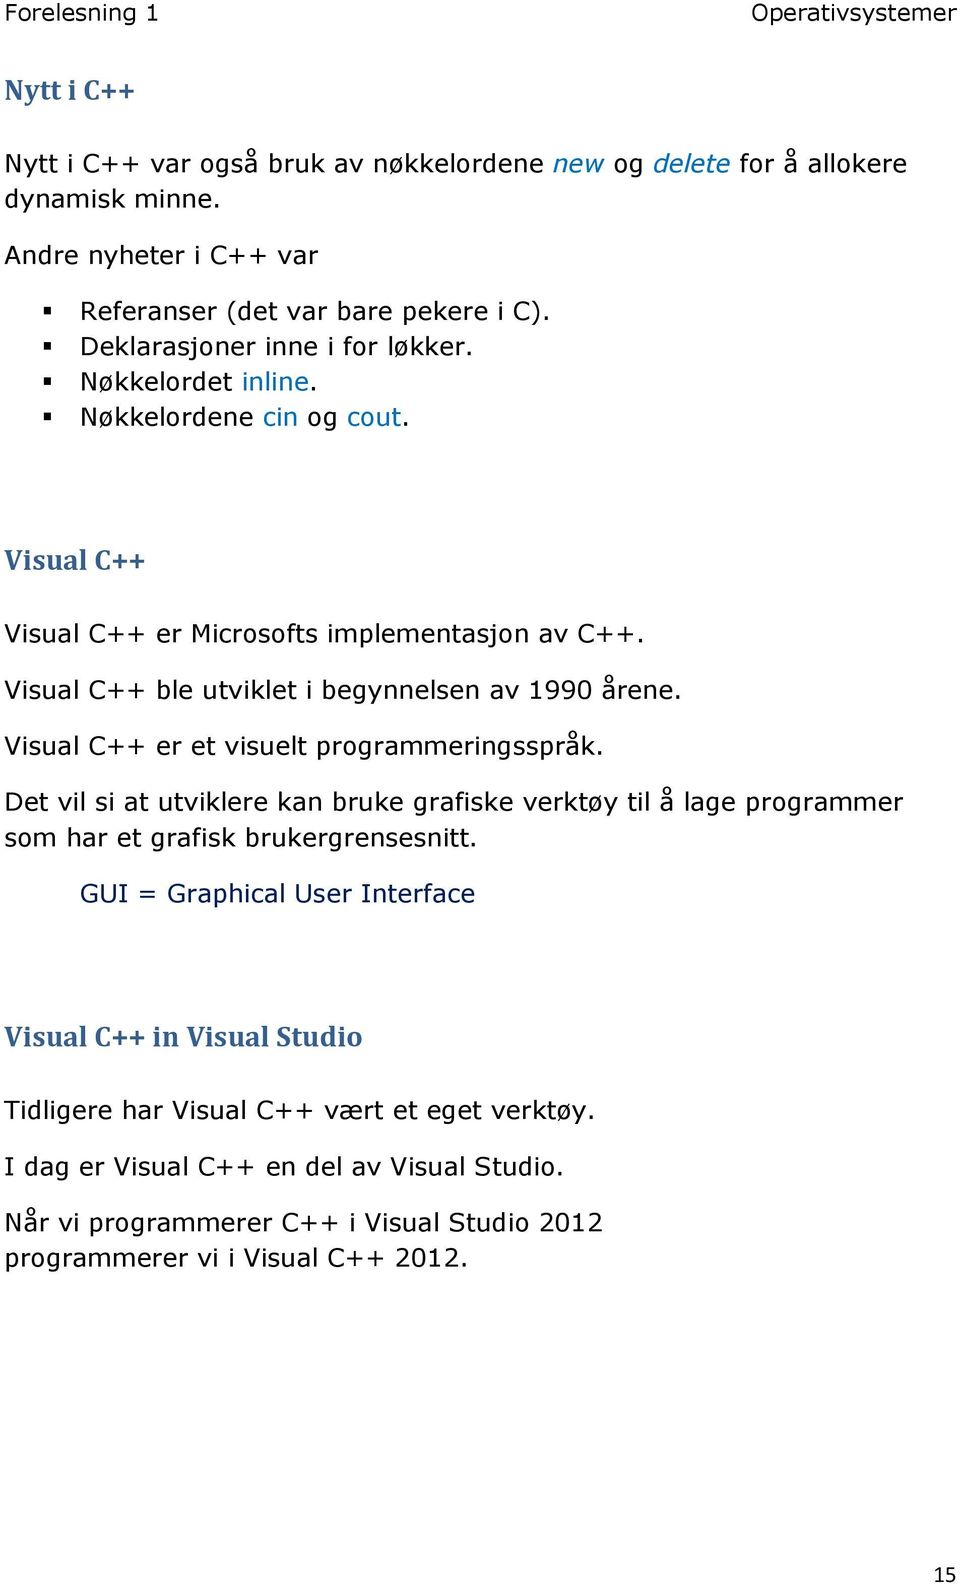 Visual C++ ble utviklet i begynnelsen av 1990 årene. Visual C++ er et visuelt programmeringsspråk.